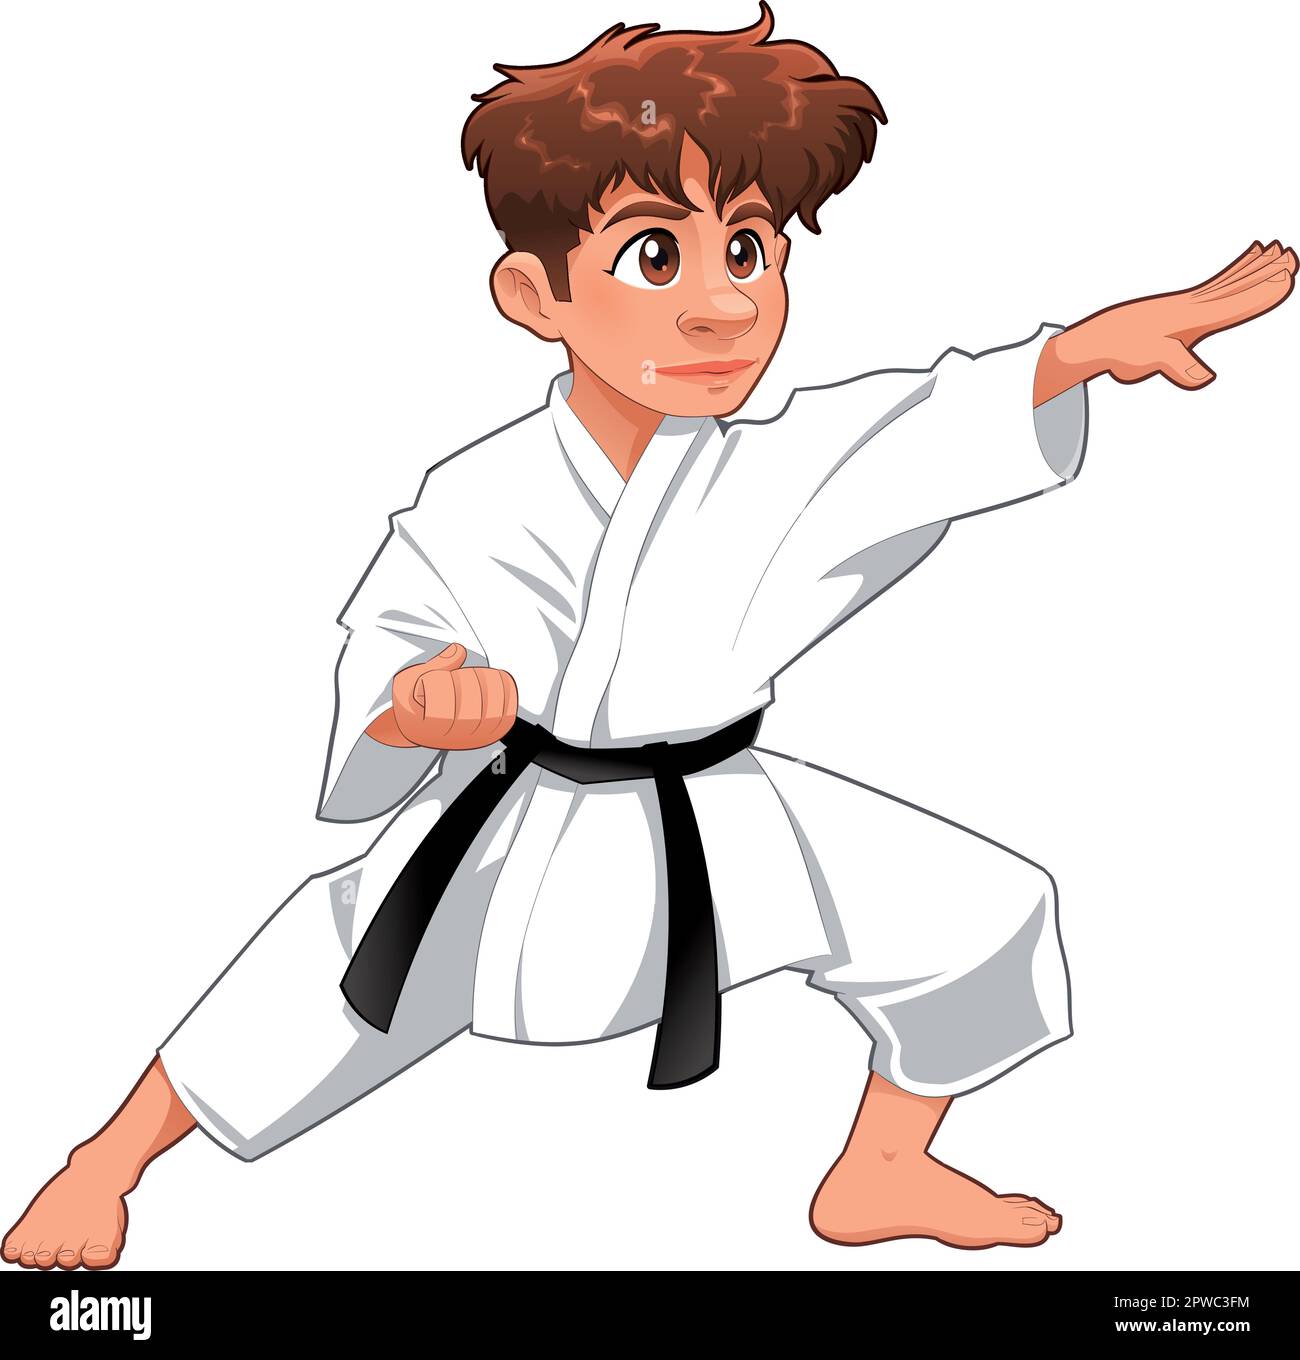 Baby Karate Player. Personaggio isolato del cartone animato vettoriale Illustrazione Vettoriale